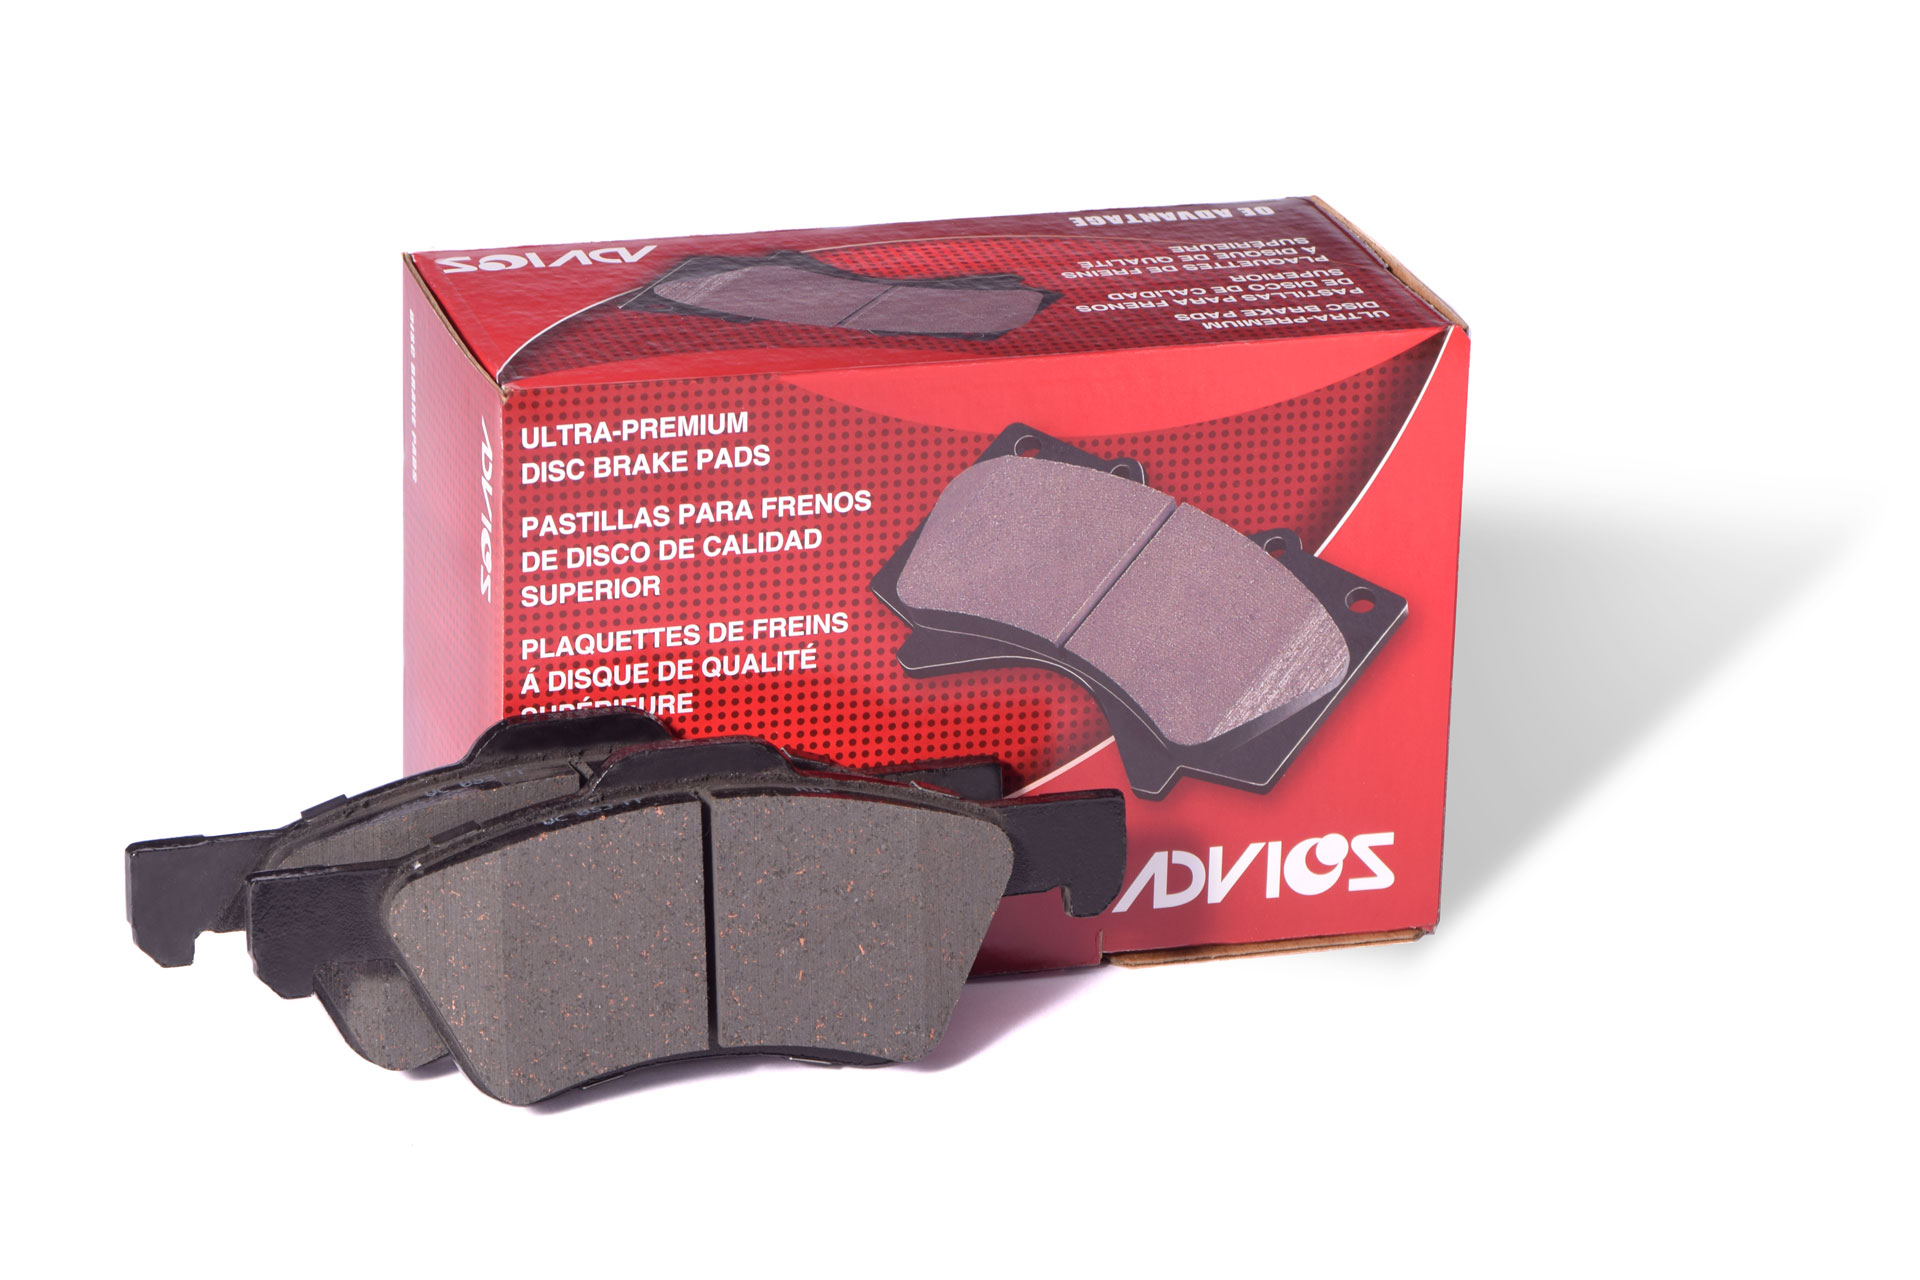 ADVICS pads box